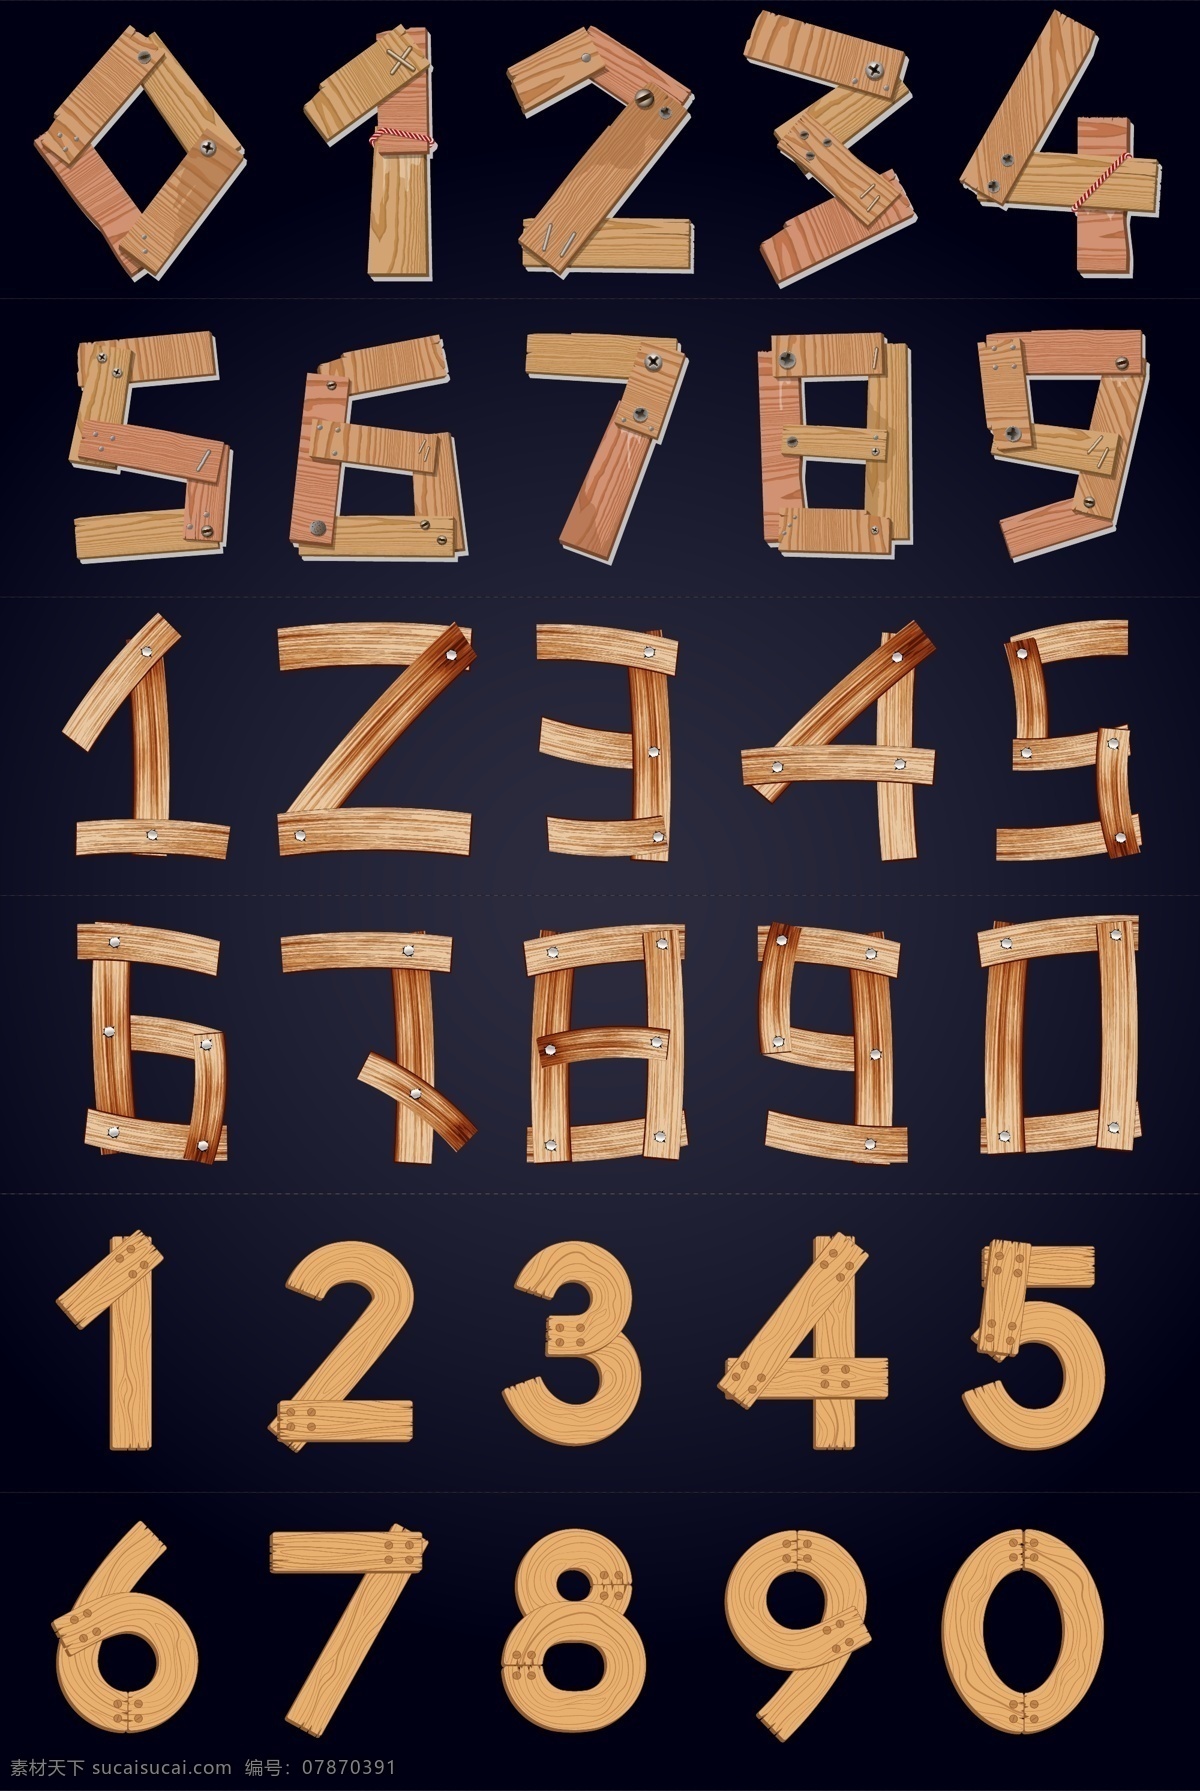 矢量 木板 创意 艺术 数字 矢量数字 木板数字 创意数字 艺术数字 木纹数字 卡通数字 彩色数字 数字图标 时尚数字 现代数字 倒计时数字 组合数字 数字字母 标志图标 其他图标